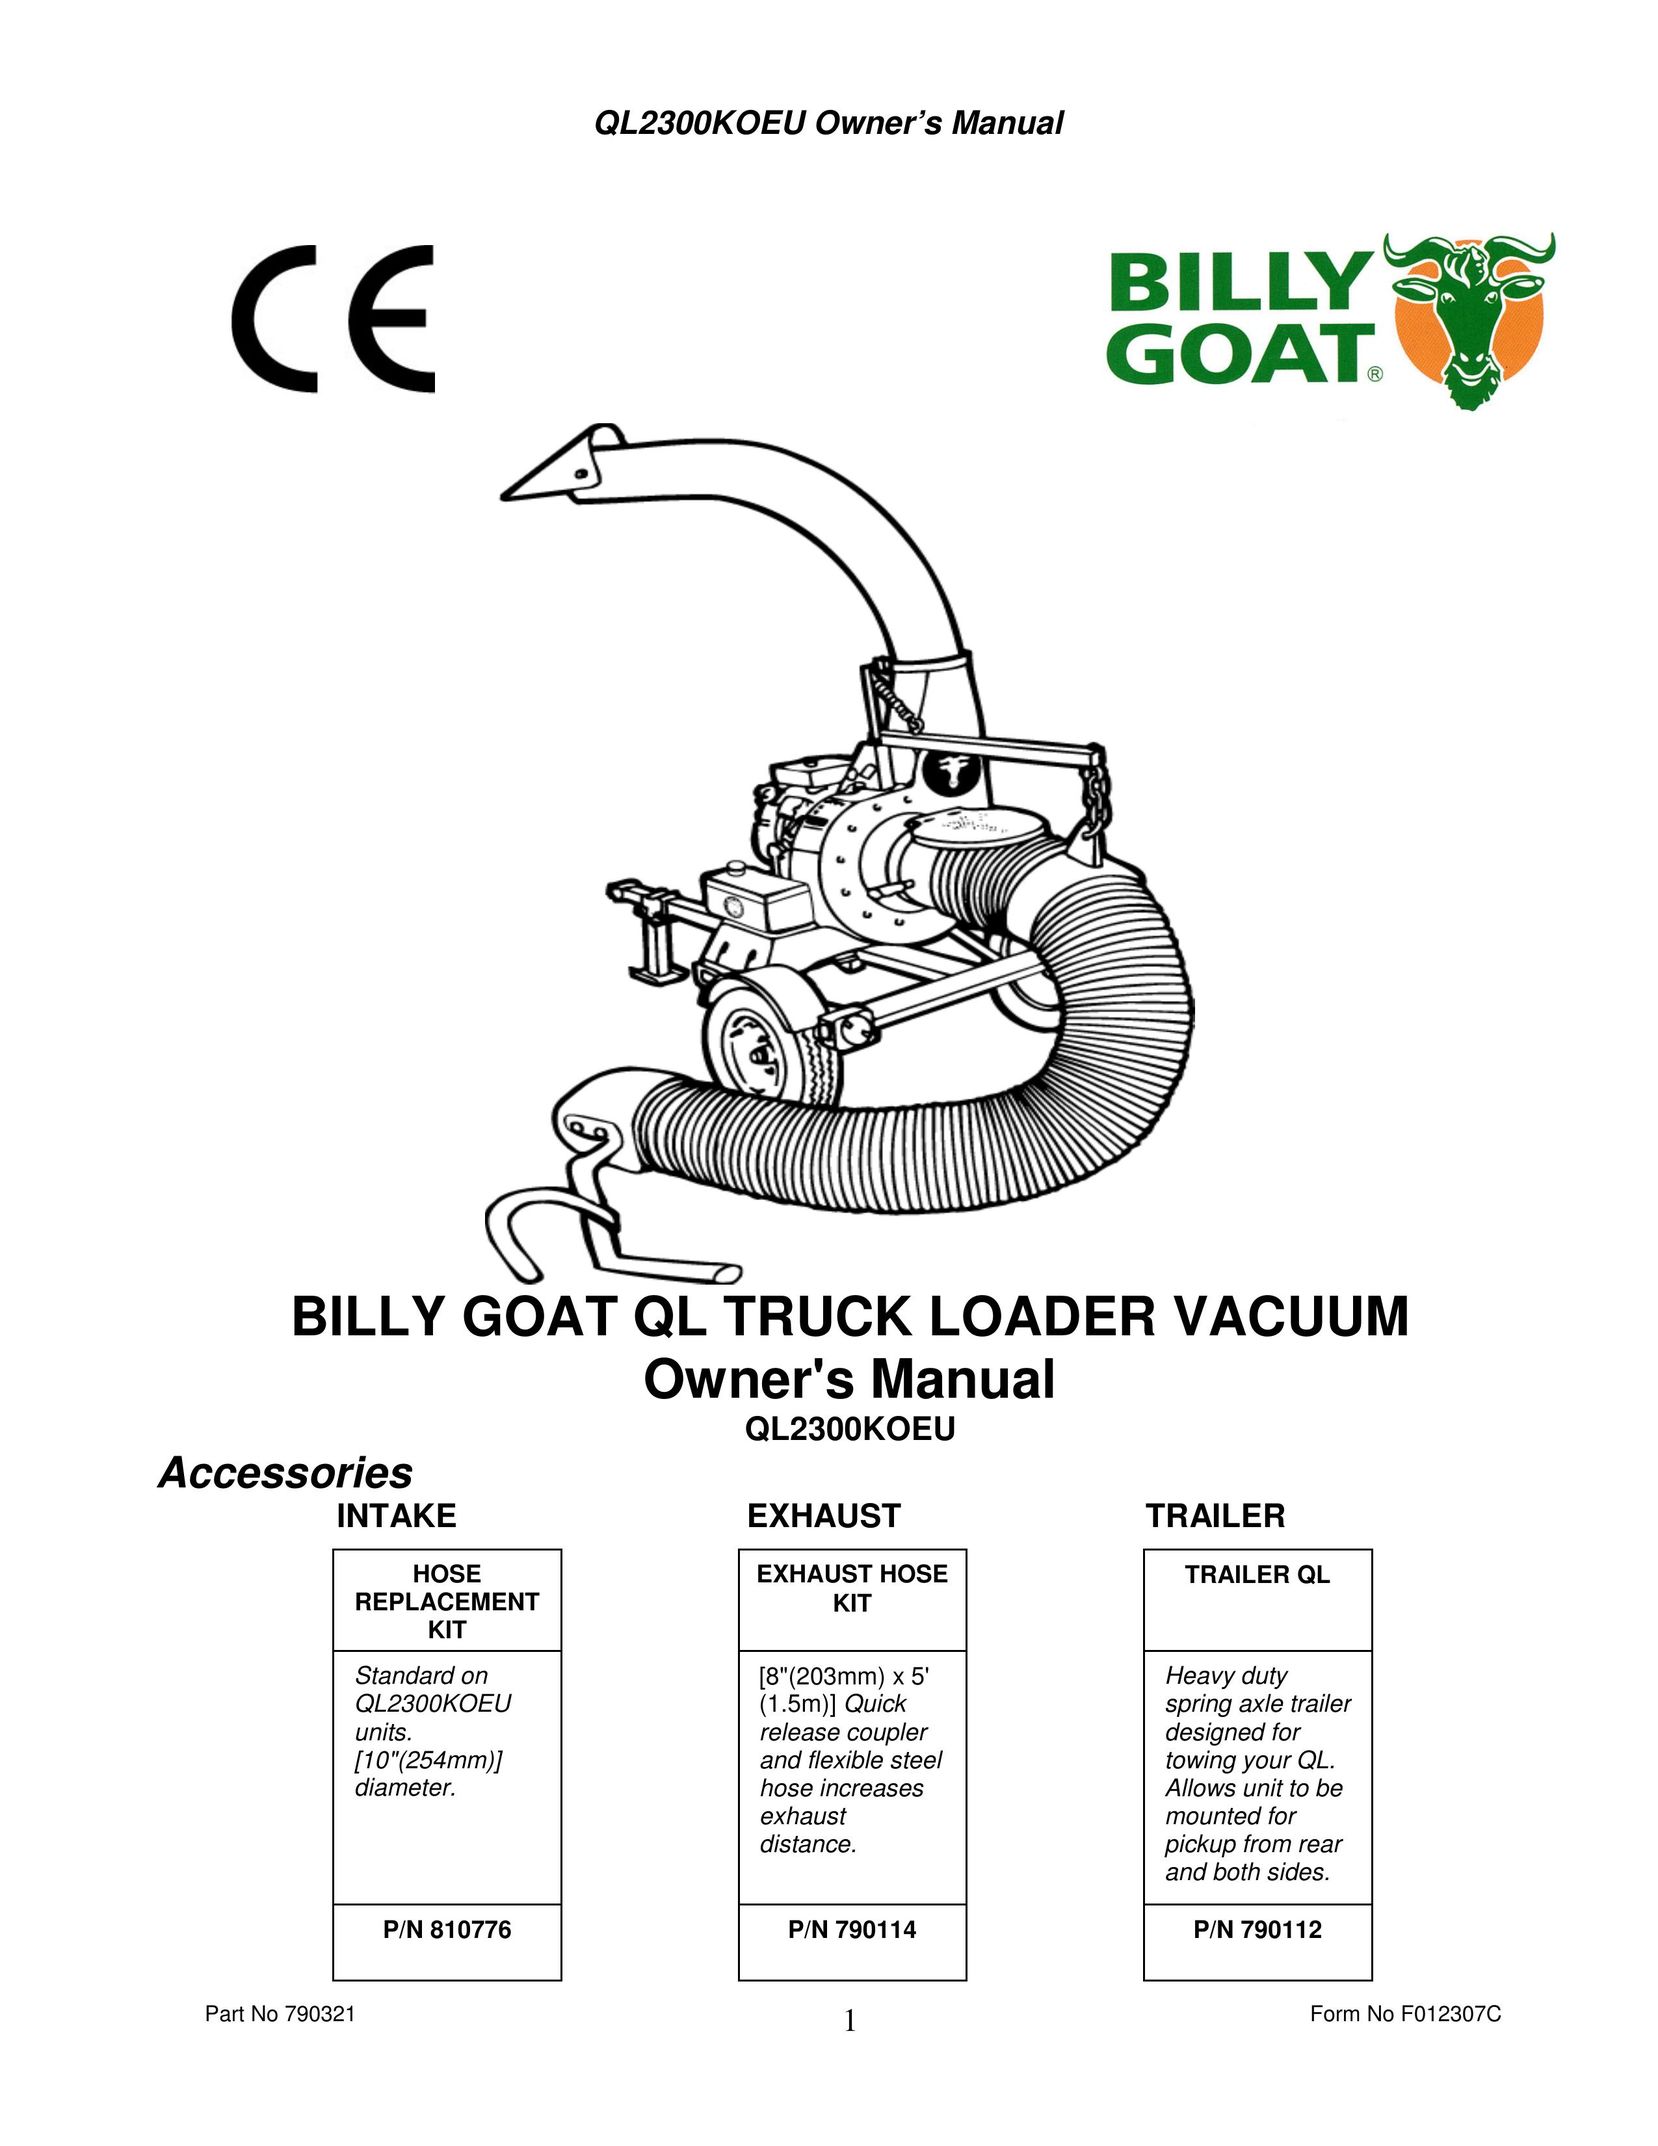 Billy Goat QL2300KOEU Vacuum Cleaner User Manual